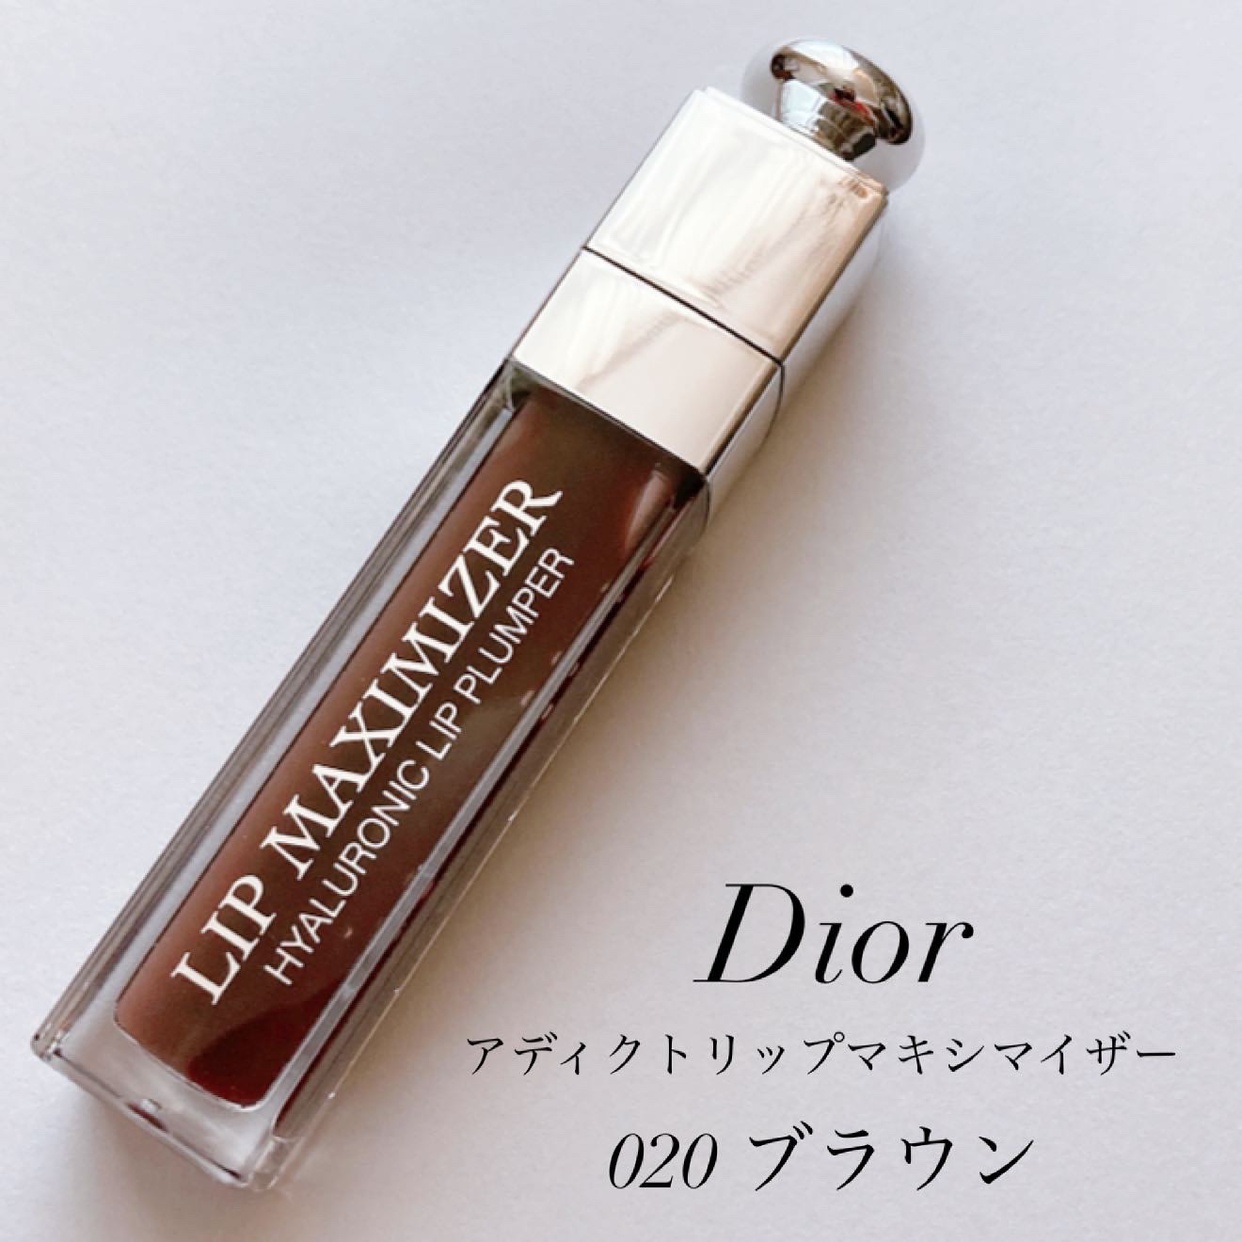 『さすがロングセラーコスメ』by 藤田 麻結 : Dior(ディオール) アディクト リップ マキシマイザーの口コミ | モノシル